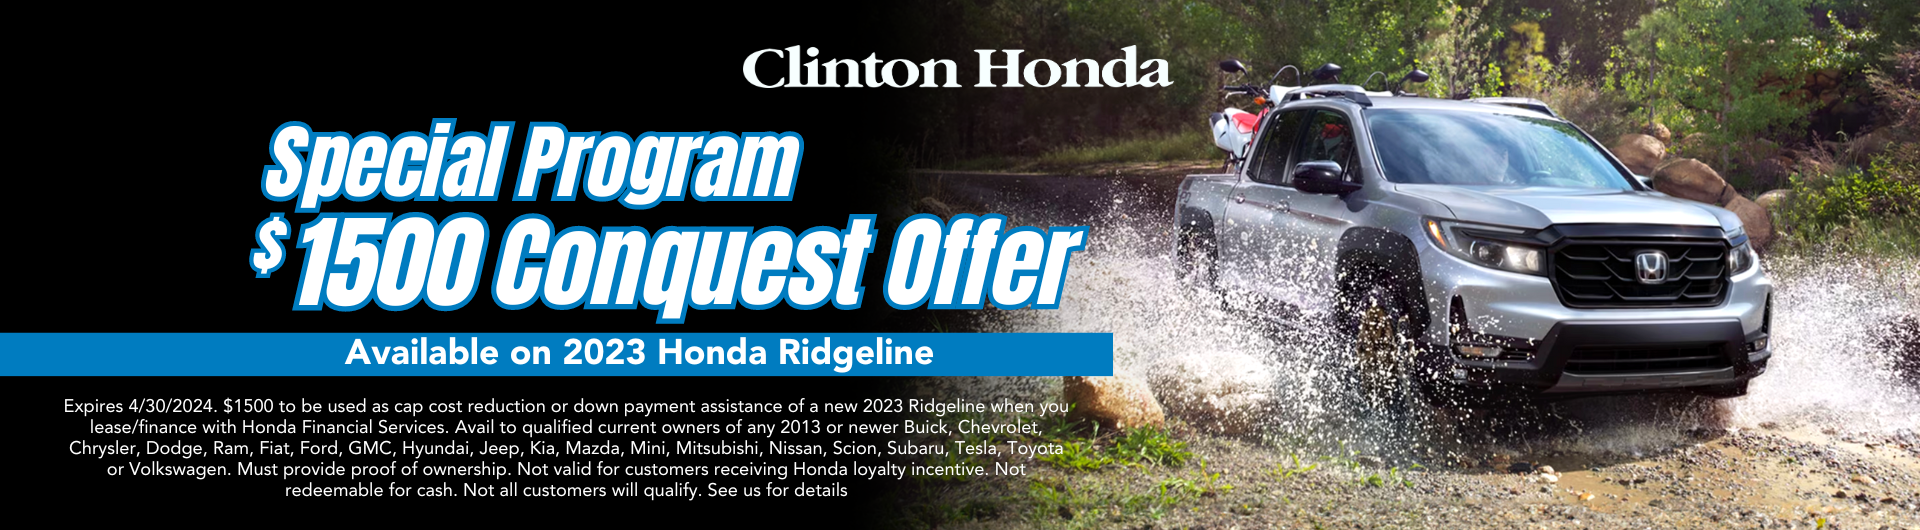 Honda Ridgeline Offer